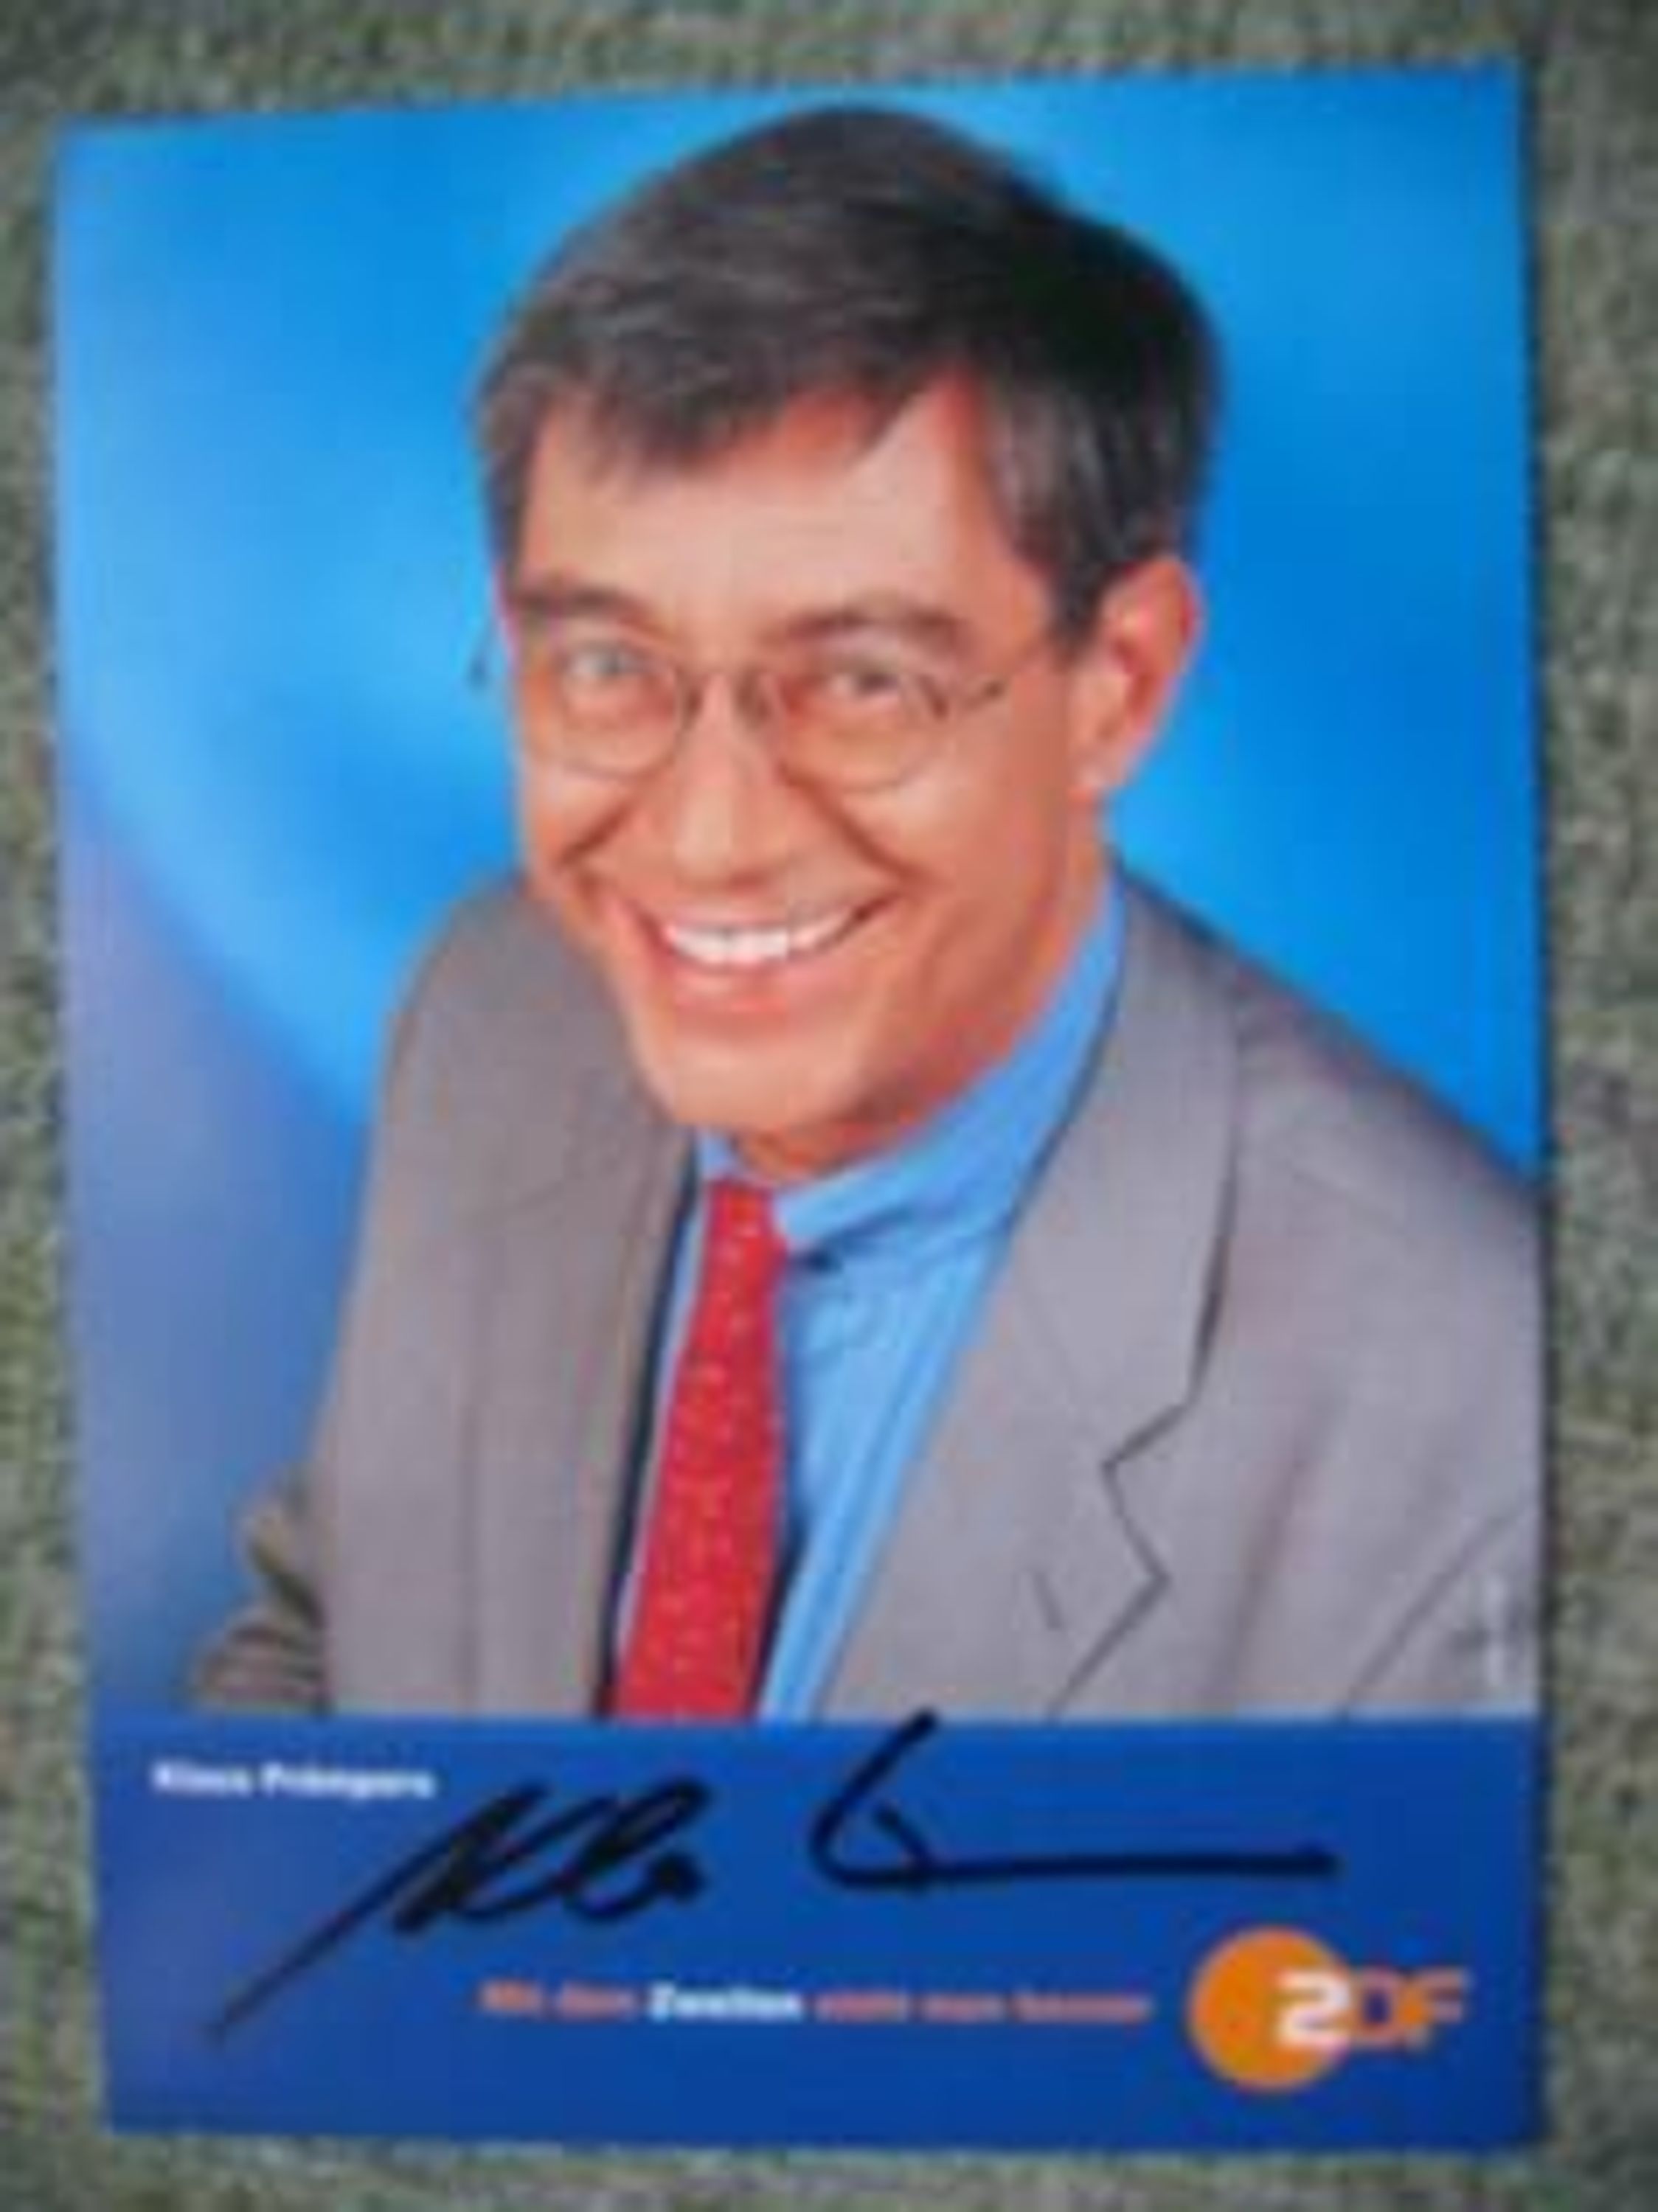 ZDF Korrespondent <b>Klaus Prömpers</b> - handsigniertes Autogramm!!! kaufen bei ... - 10282167